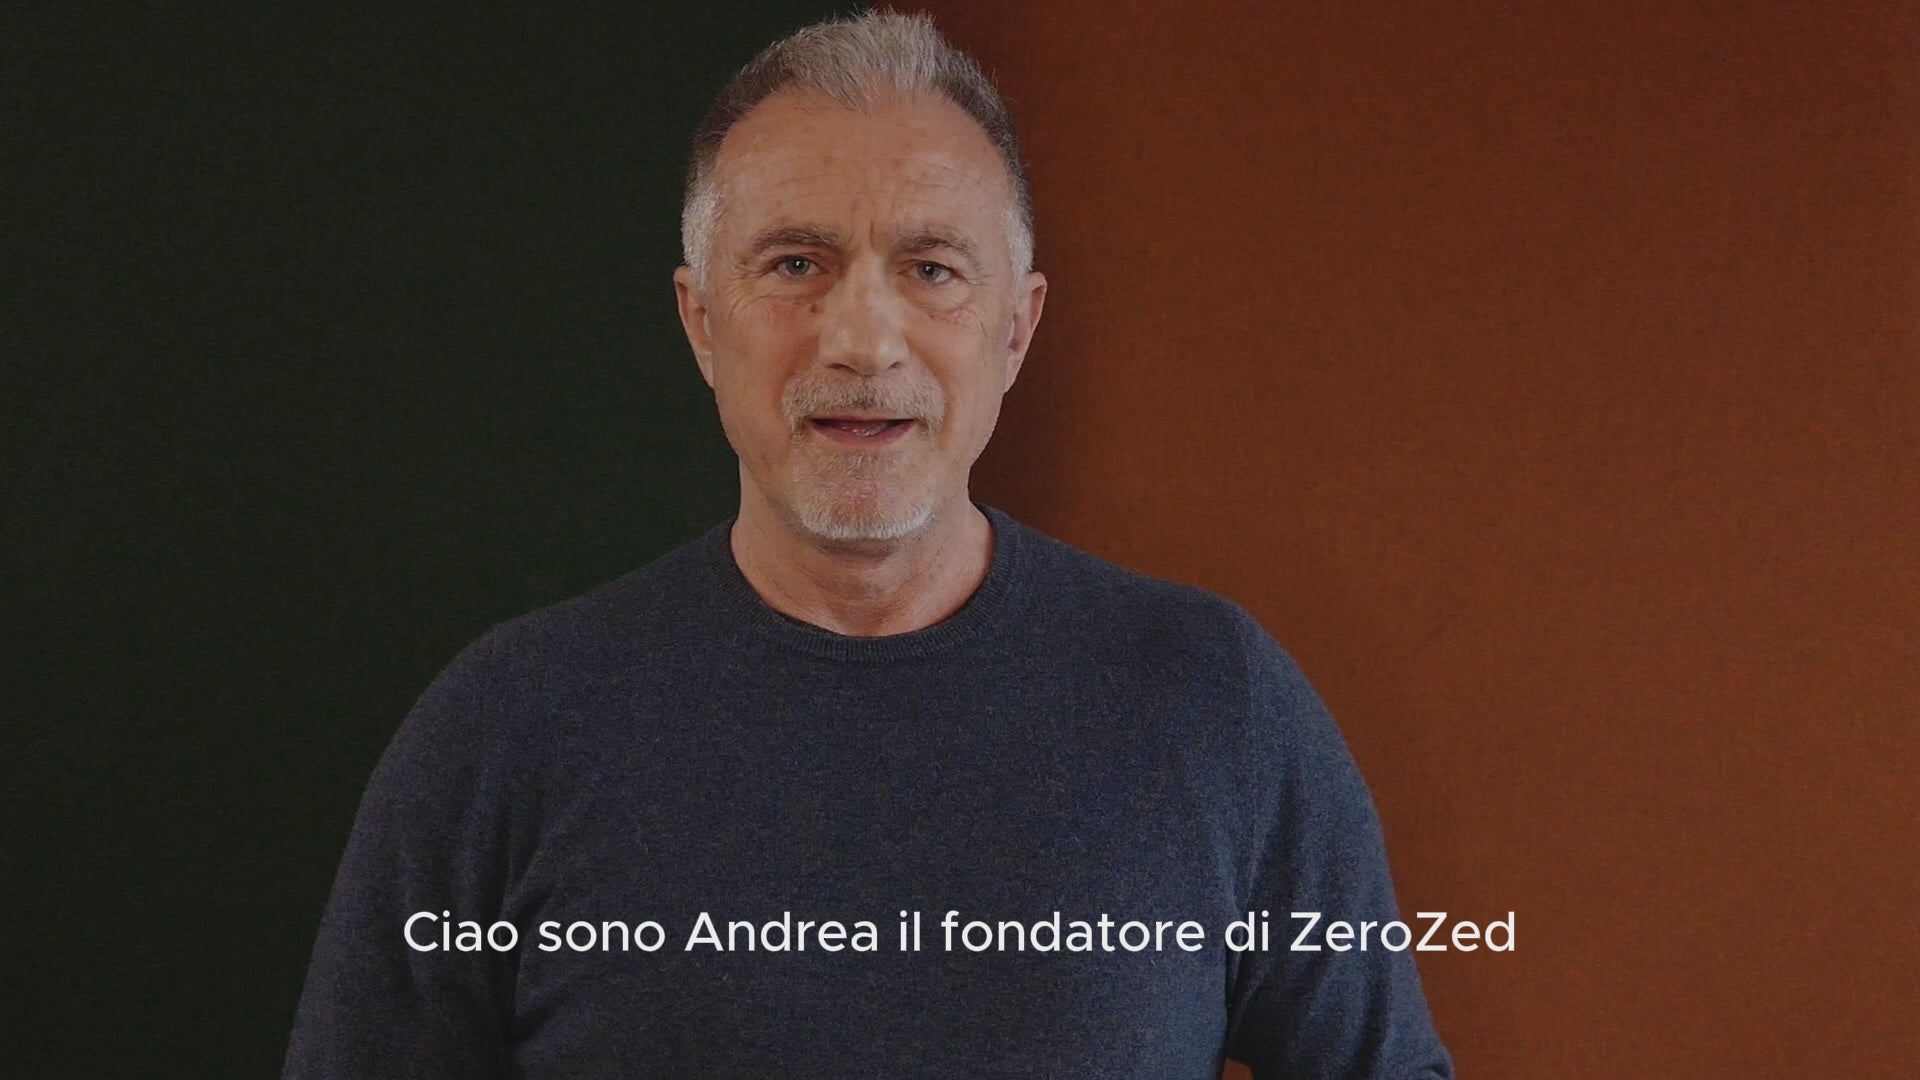 Carica il video: Video di Andrea De Bernardi, fondatore di ZeroZed, che introduce ZeroZed e spiega come vengono selezionati i prodotti, ponendo la massima attenzione sulla qualità.